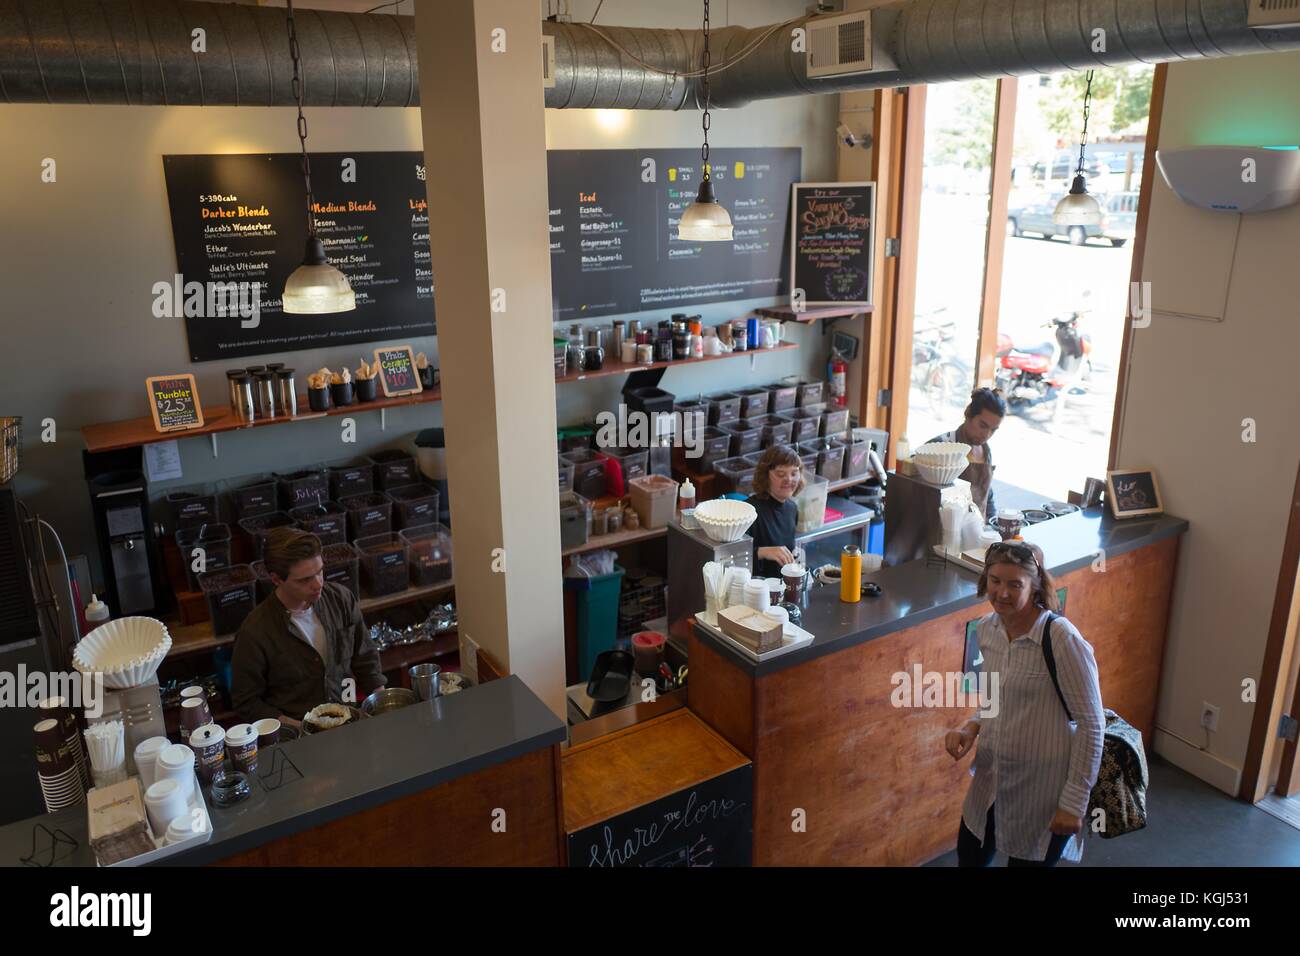 Vue de dessus de baristas préparer le café et les clients du shopping à philz café, un populaire basée en Californie, verser sur le café artisan chaîne dans le ghetto gourmet (nord shattuck) près de Berkeley, Californie, le 6 octobre 2017. () Banque D'Images